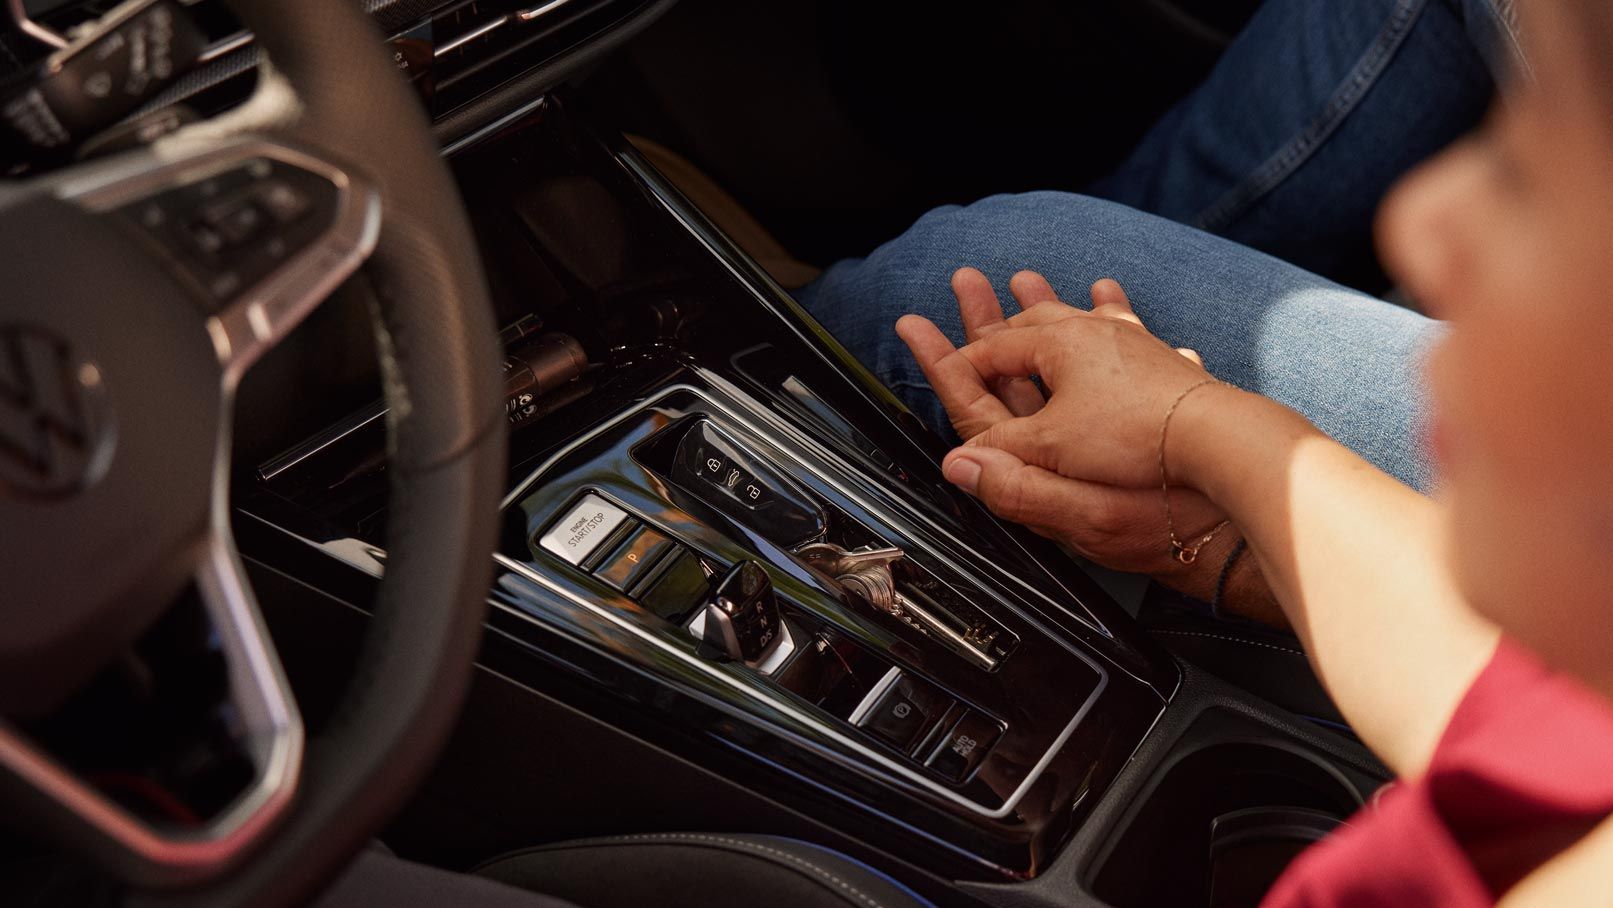 Detailansicht der Mitellkonsole und DSG/Automatikgetriebe im VW Golf, zwei Menschen halten Hände